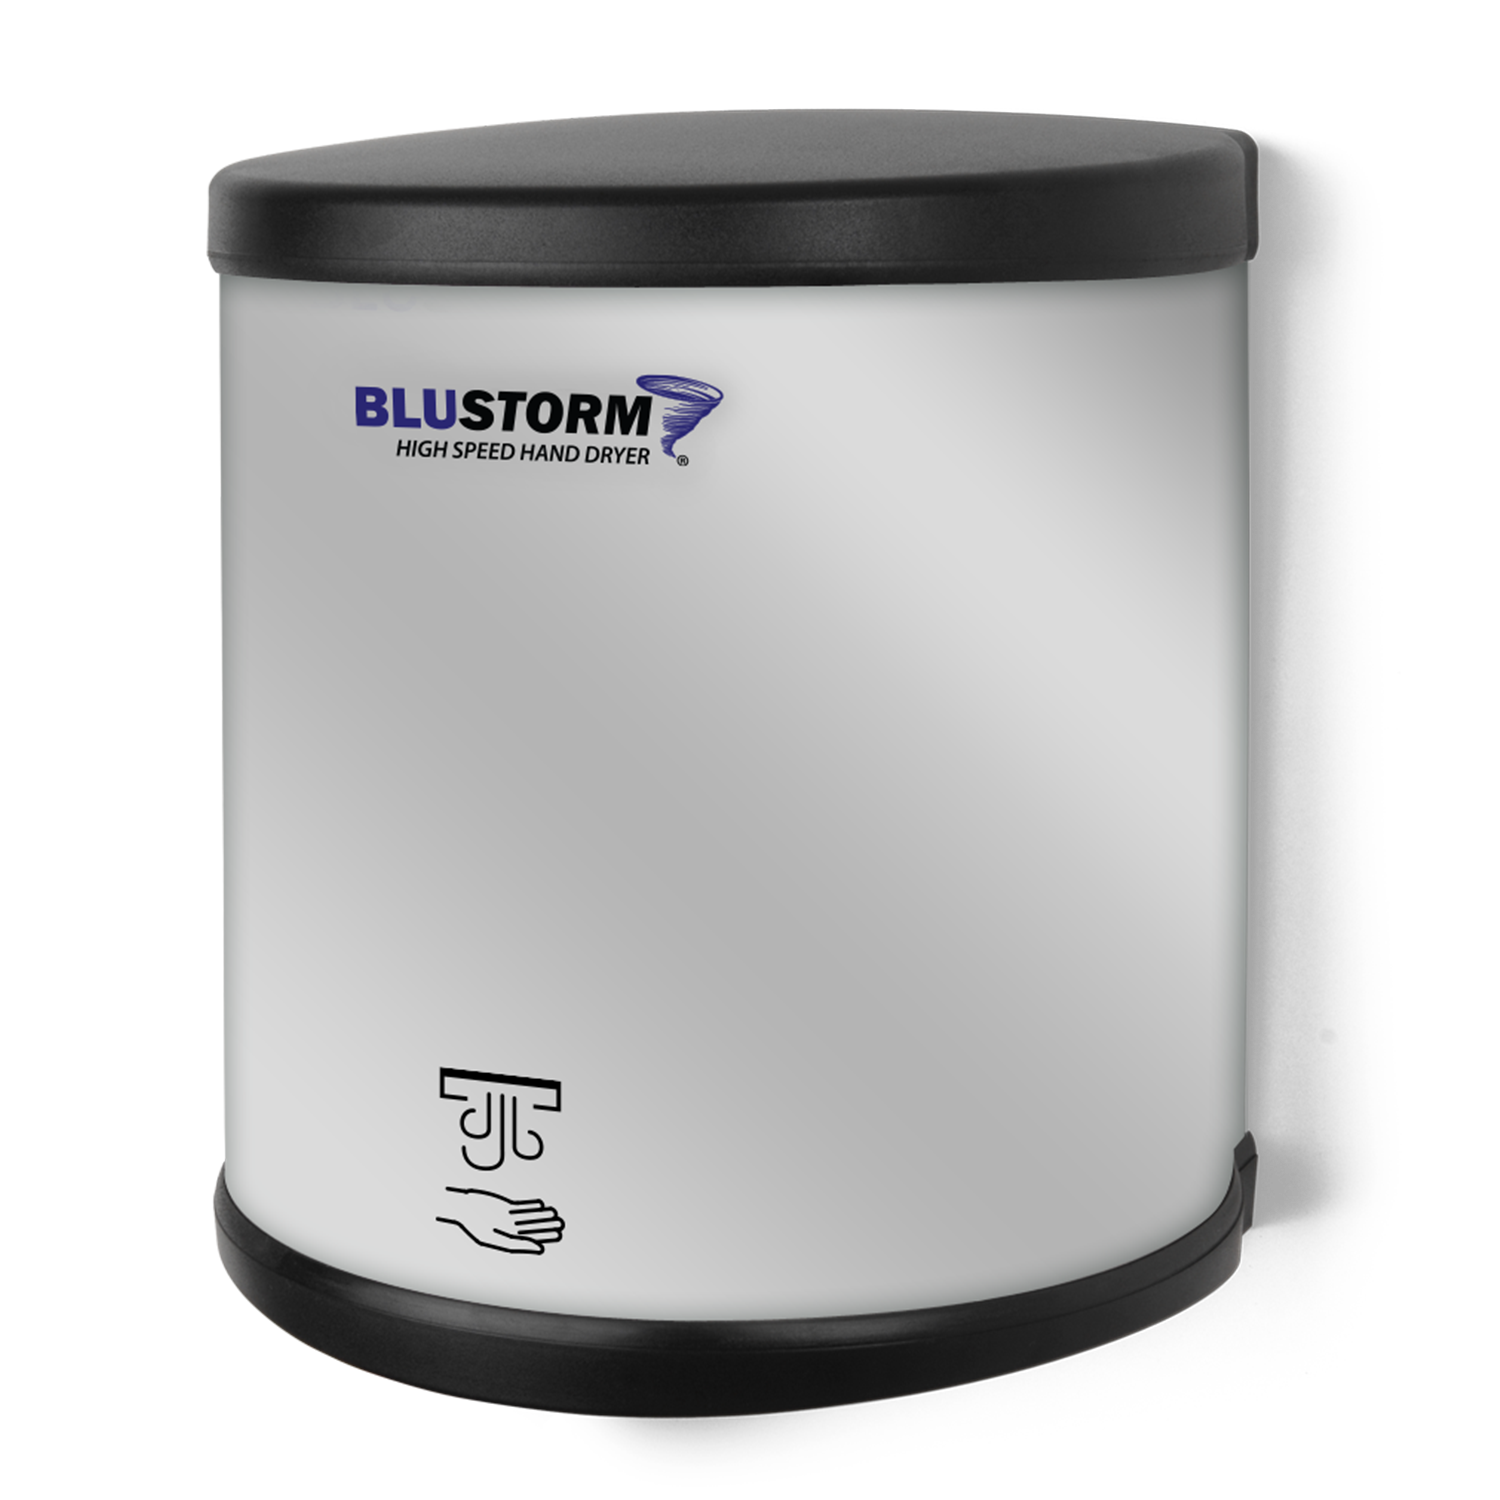 BluStorm high speed hand dryer